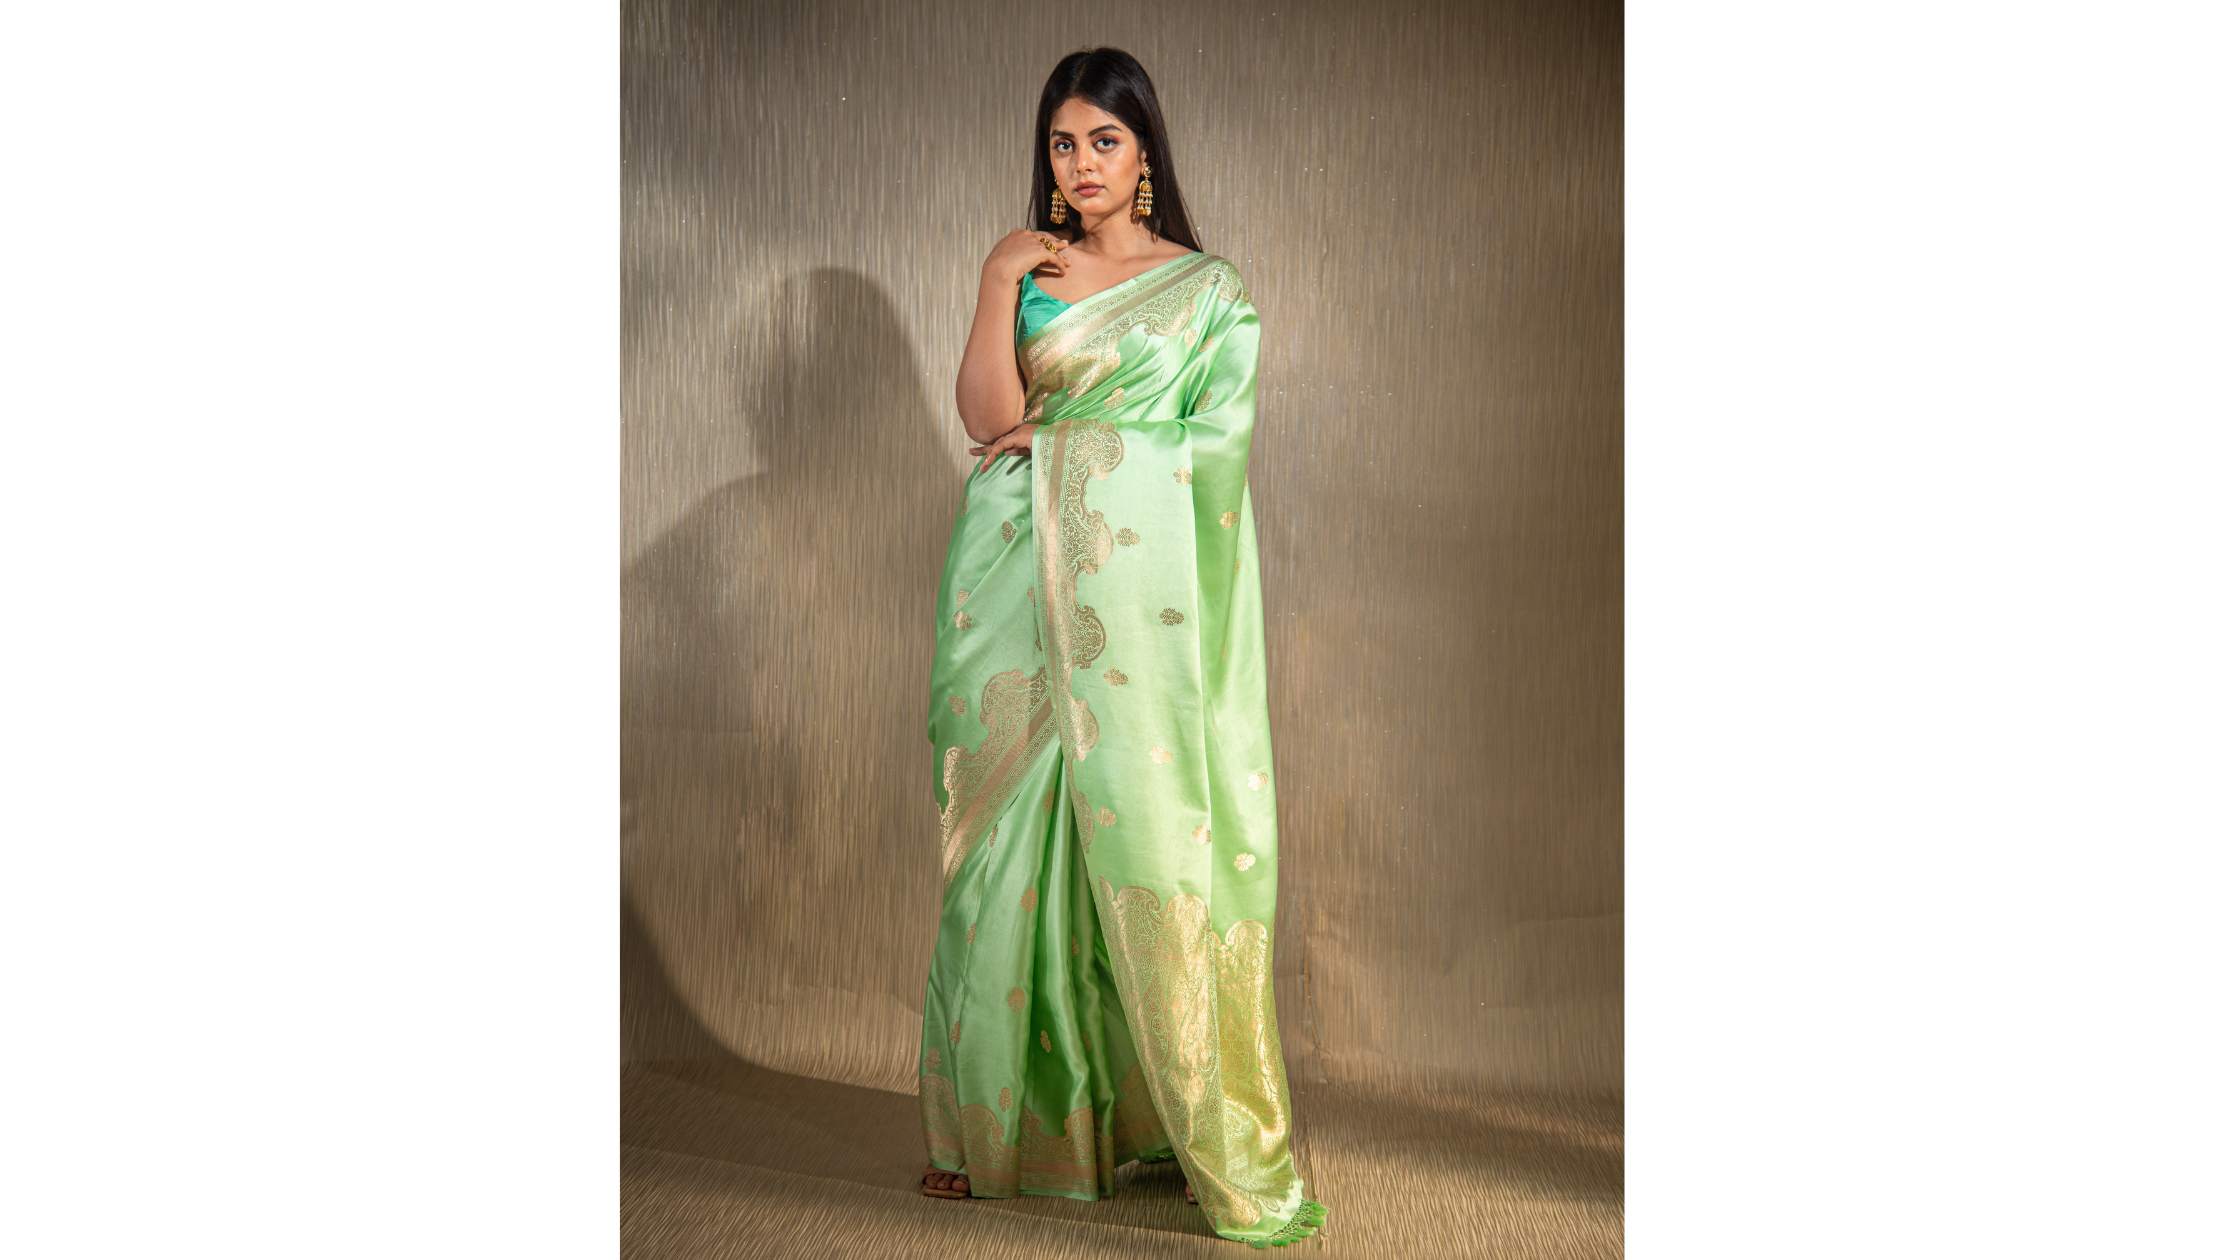 Wear the traditional Banarasi saree in a modern style in the festive season  | लुक फॉर द डे: ​​​​​​फेस्टिव सीजन में पारंपरिक बनारसी साड़ी को पहनें  मॉडर्न अंदाज में | Dainik Bhaskar